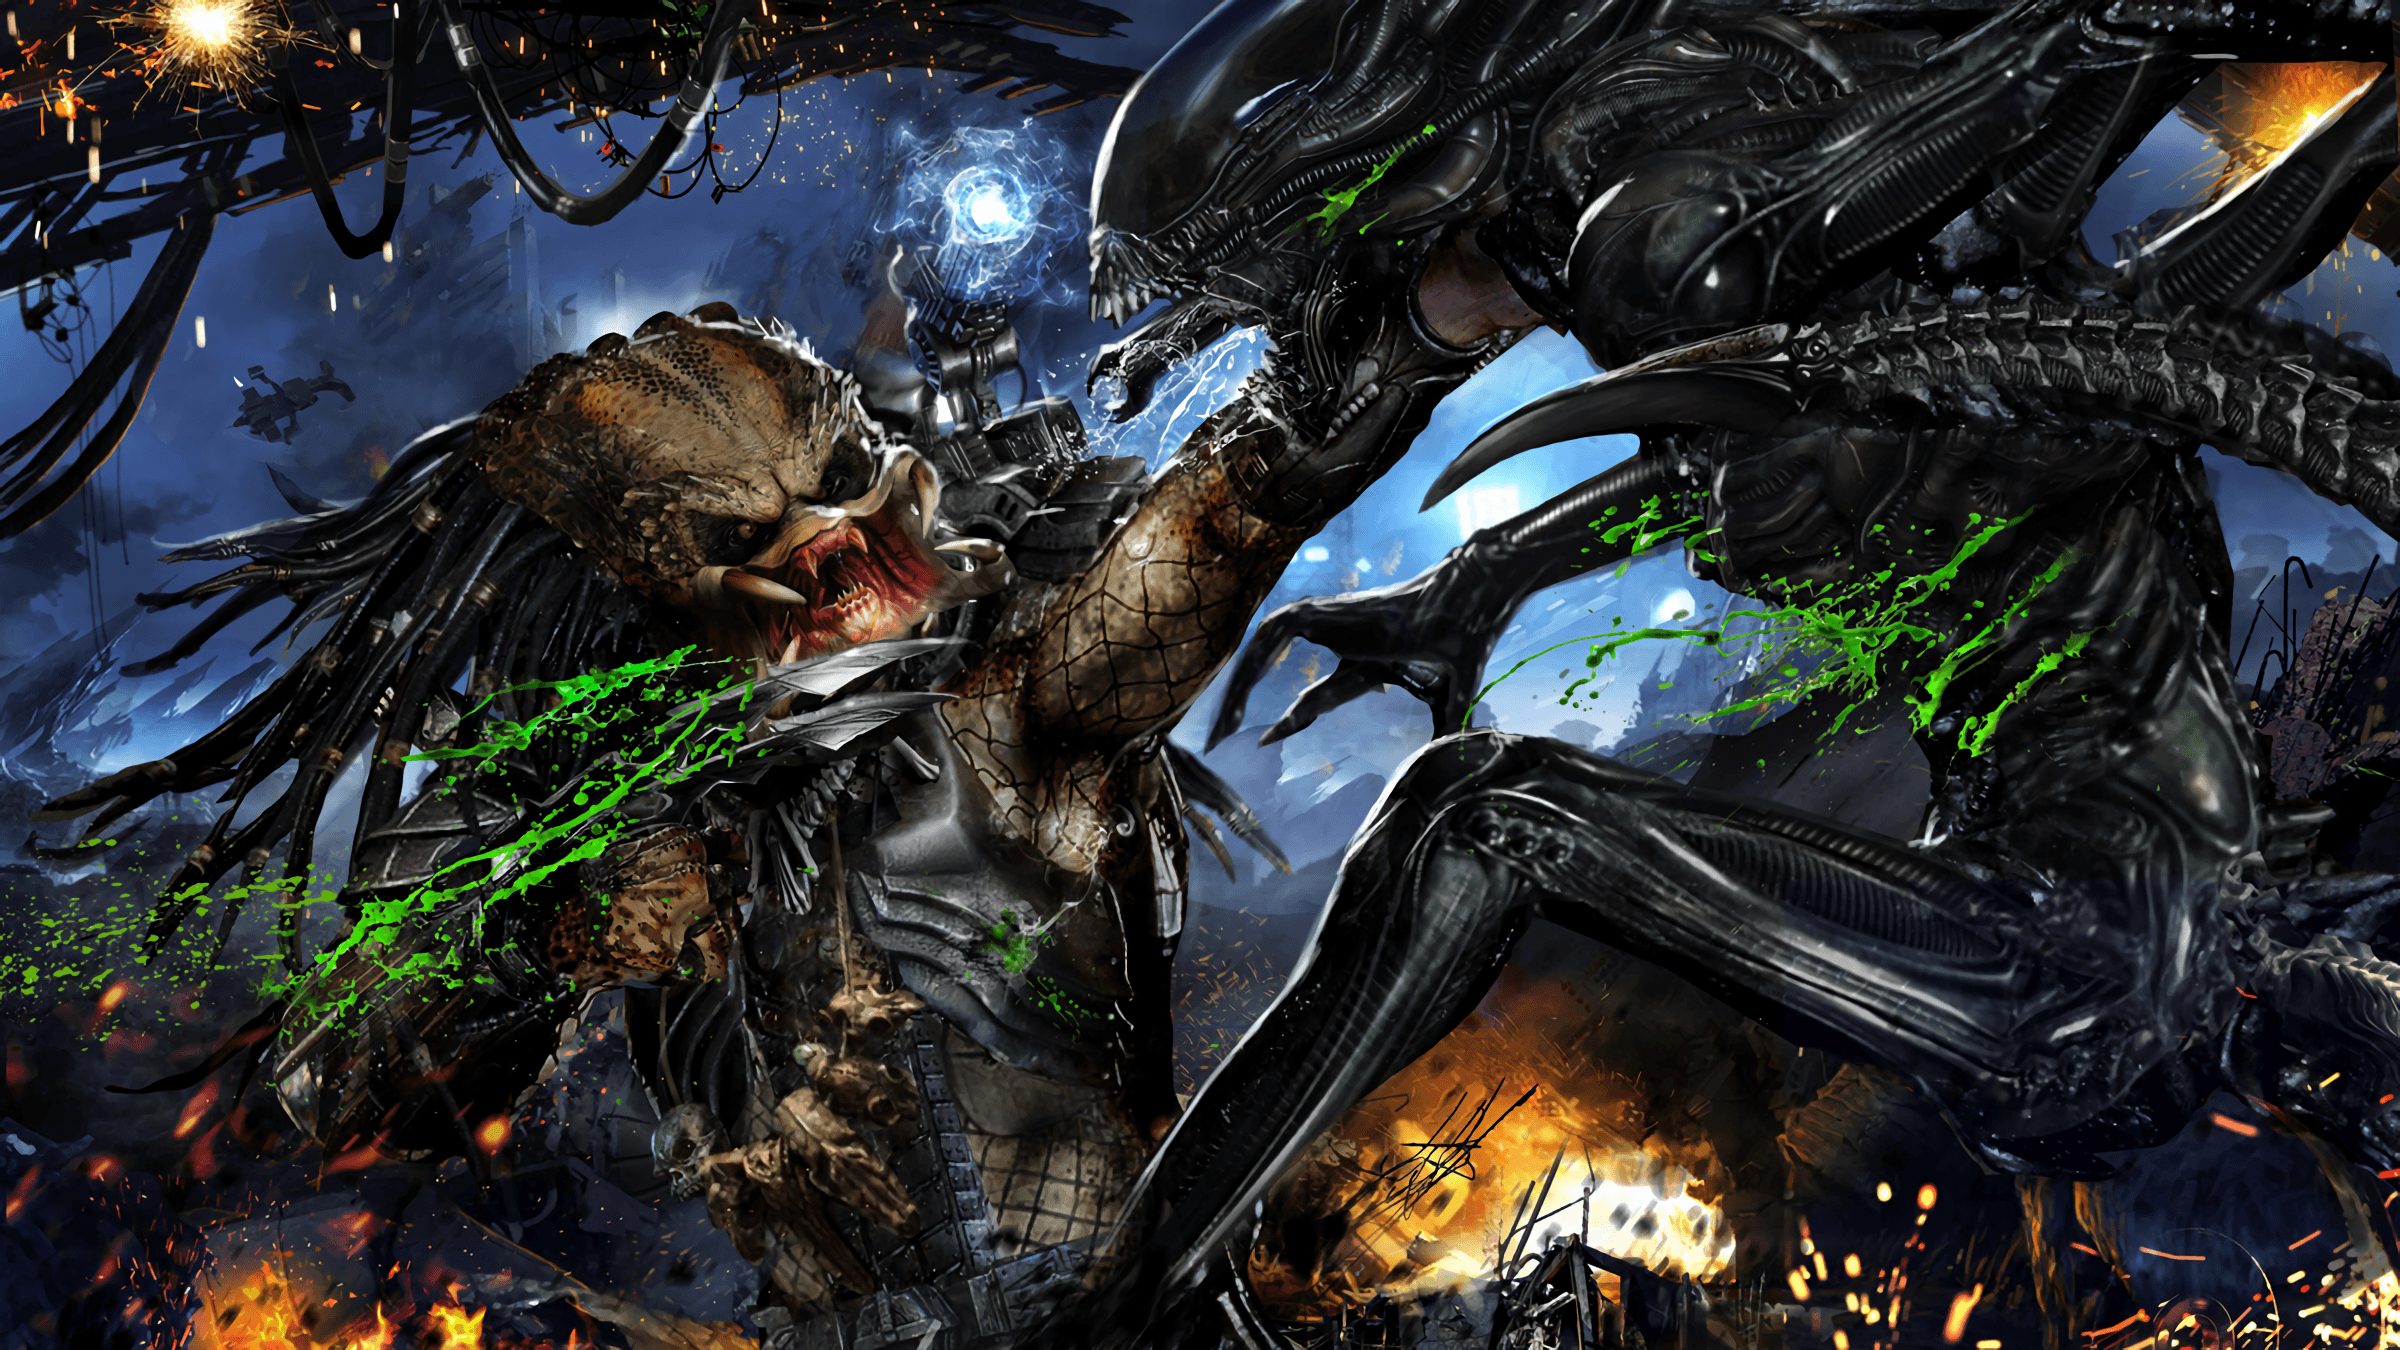 aliens vs predator prey comic pdf